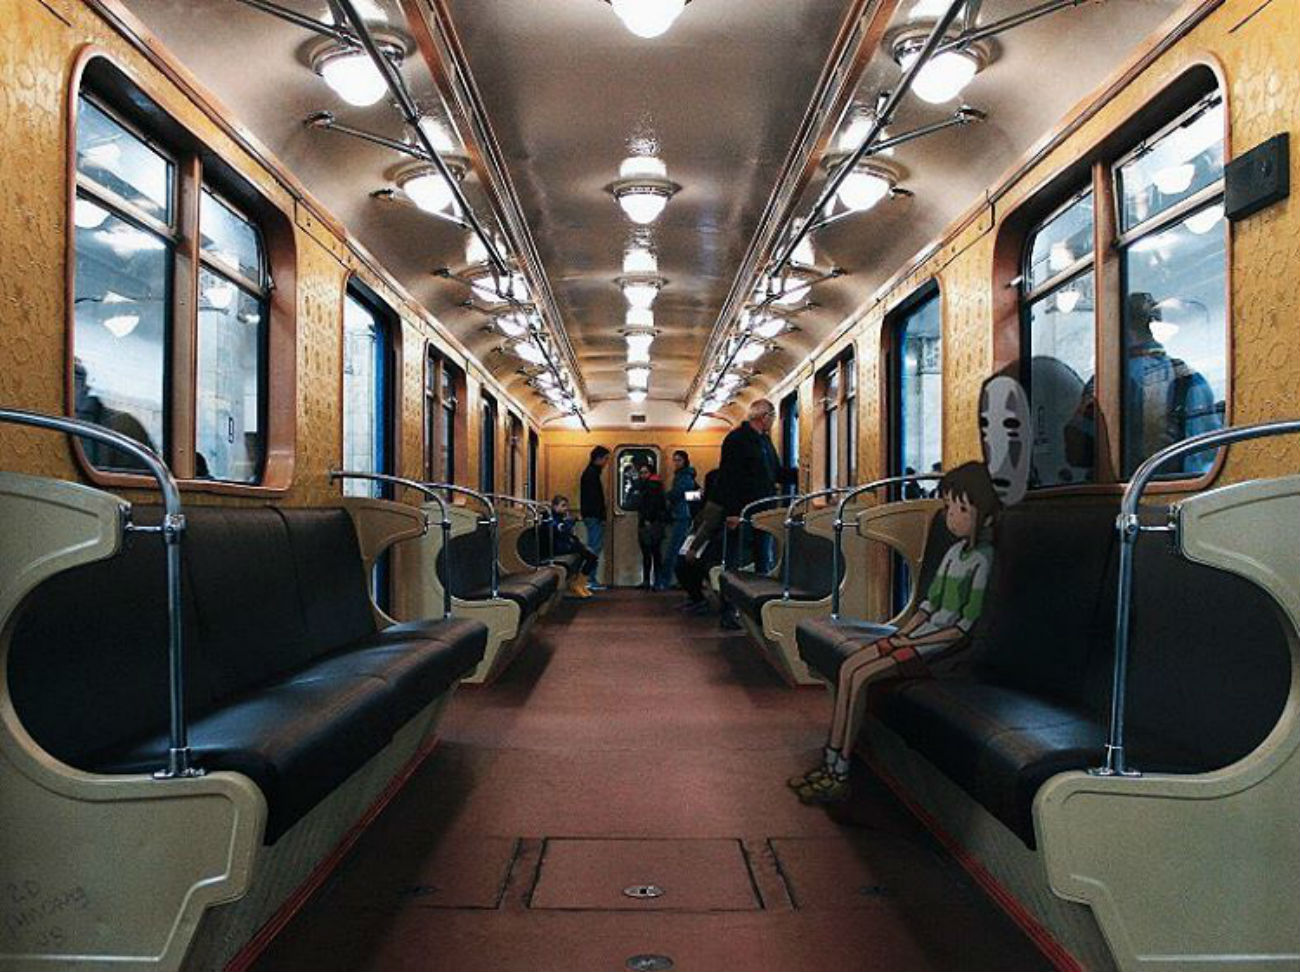 Una scena de “La città incantata” di Hayao Miyazaki riambientata nella metro di Mosca